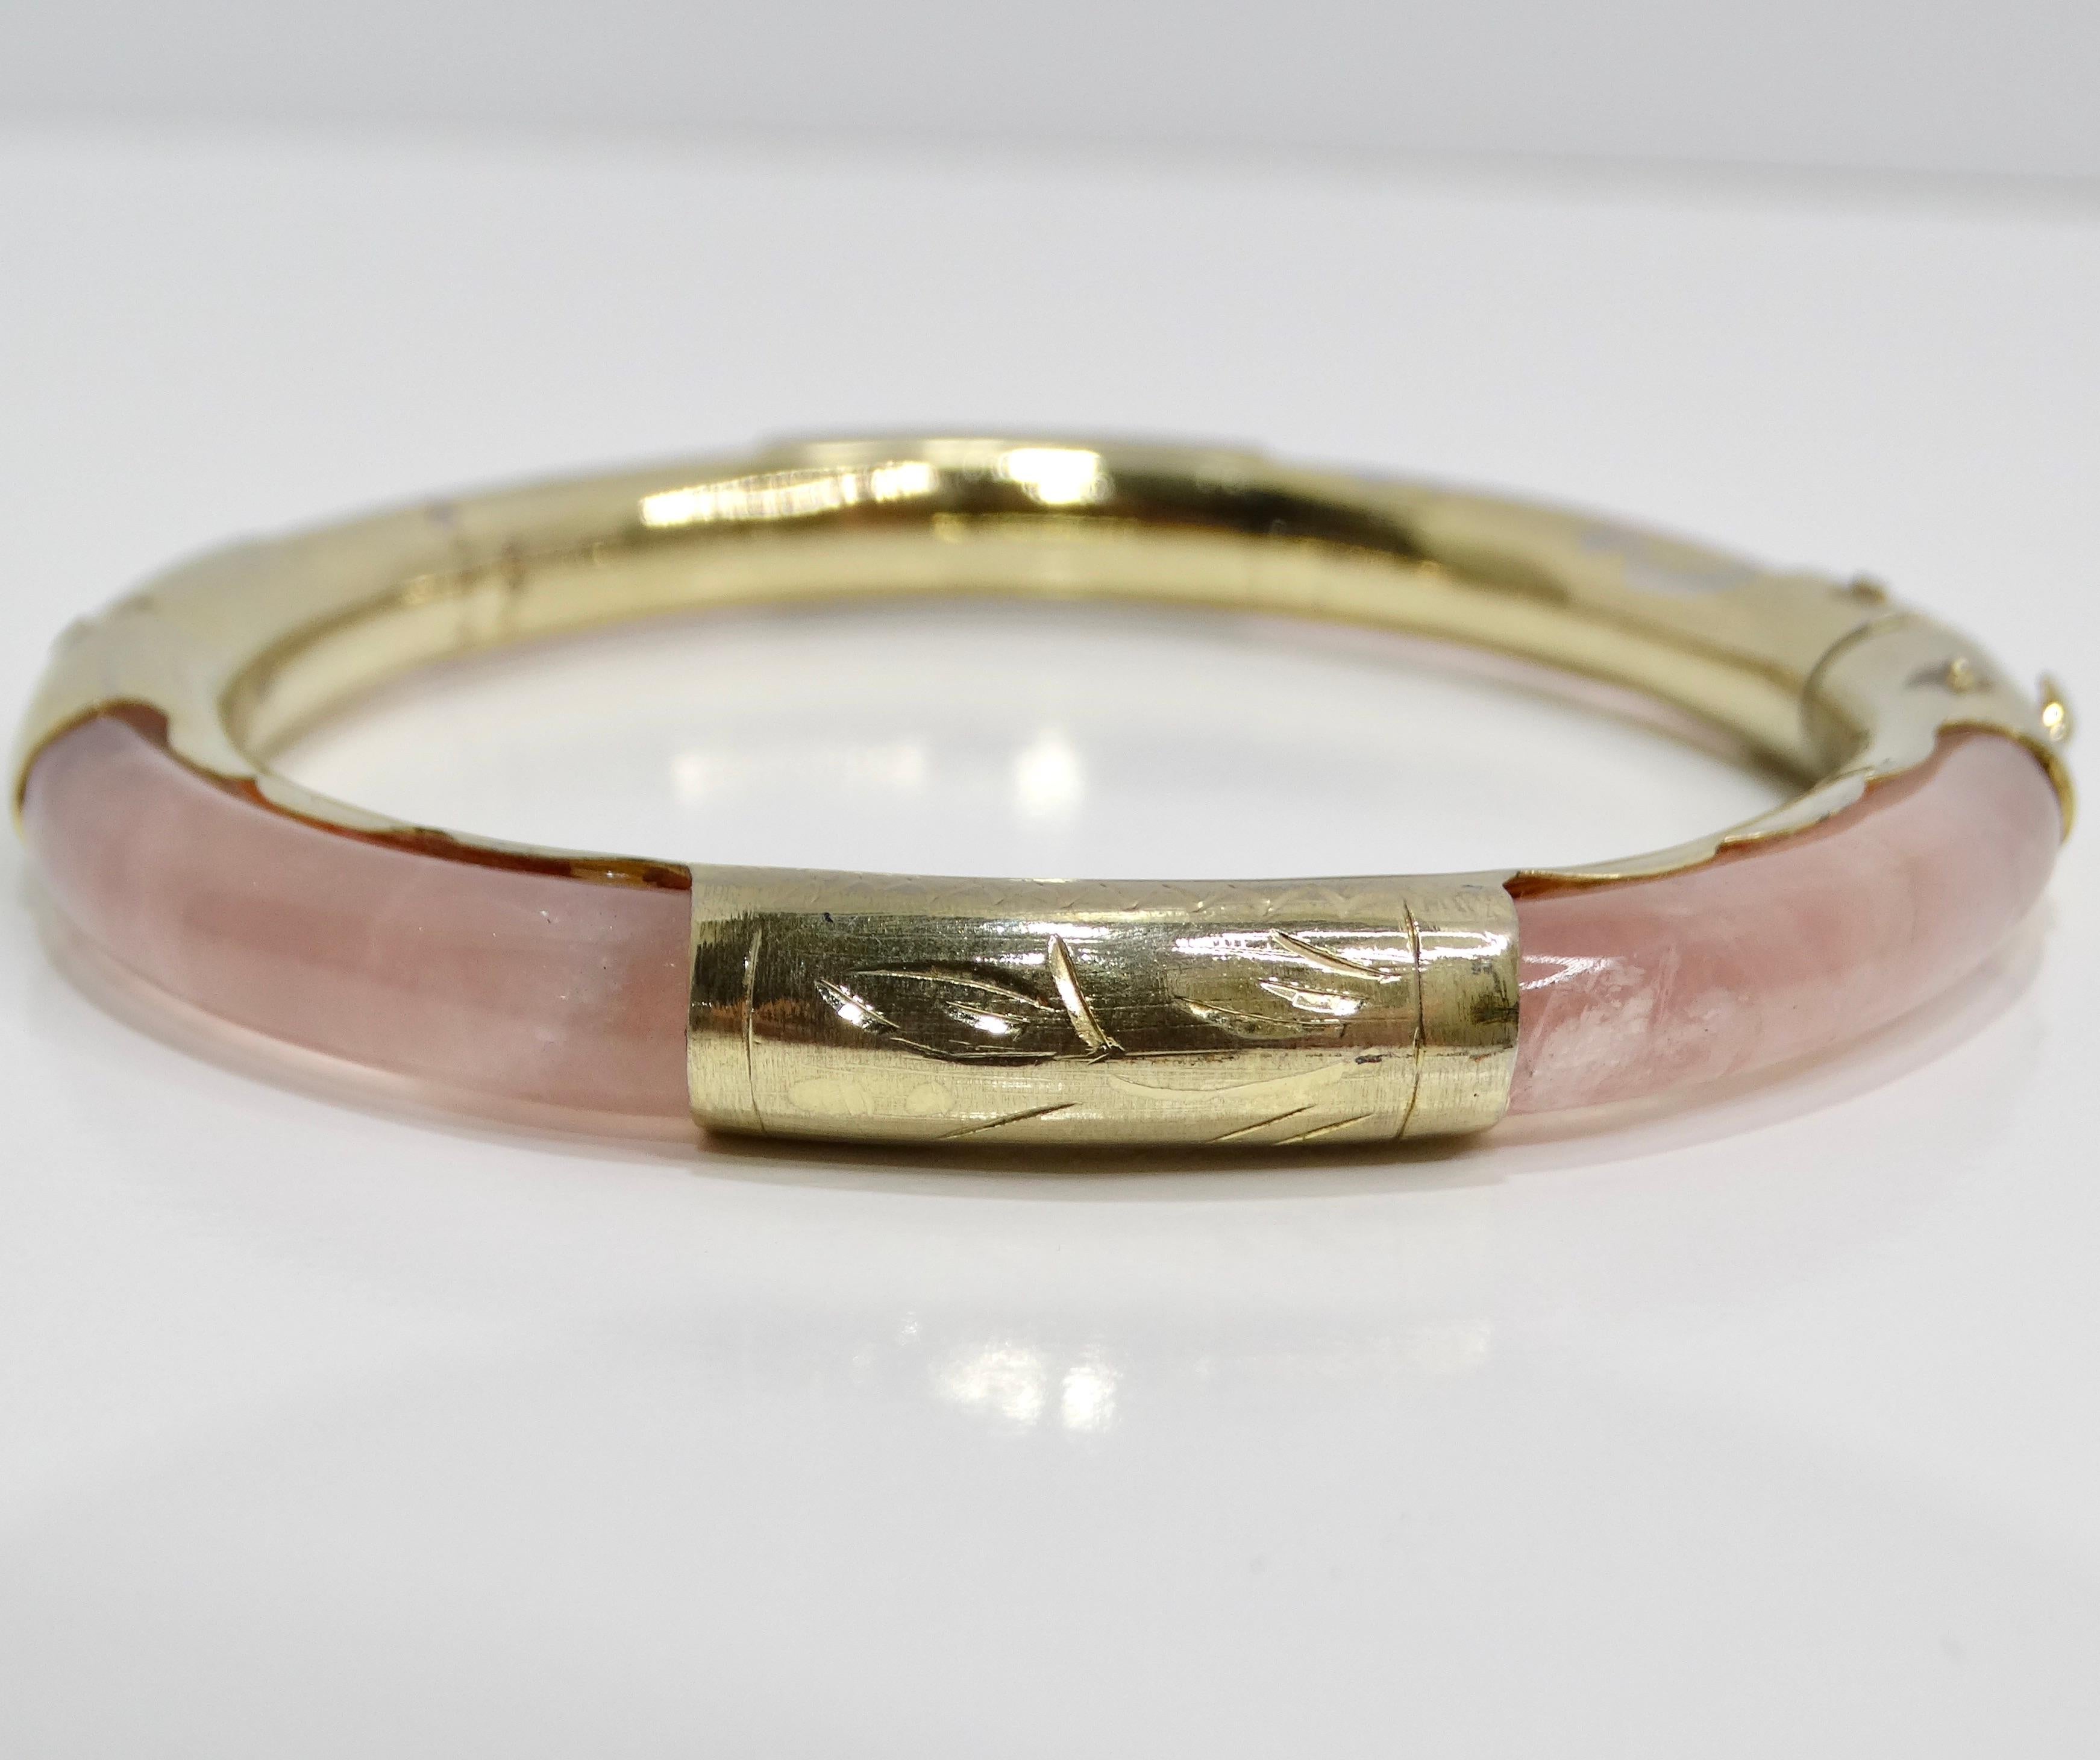 Voici le bracelet manchette en verre rose plaqué or 18 carats, une charmante pièce vintage des années 1960 qui respire l'élégance et la féminité. Ce ravissant bracelet manchette est orné d'un magnifique verre rose pâle, dont la teinte douce et